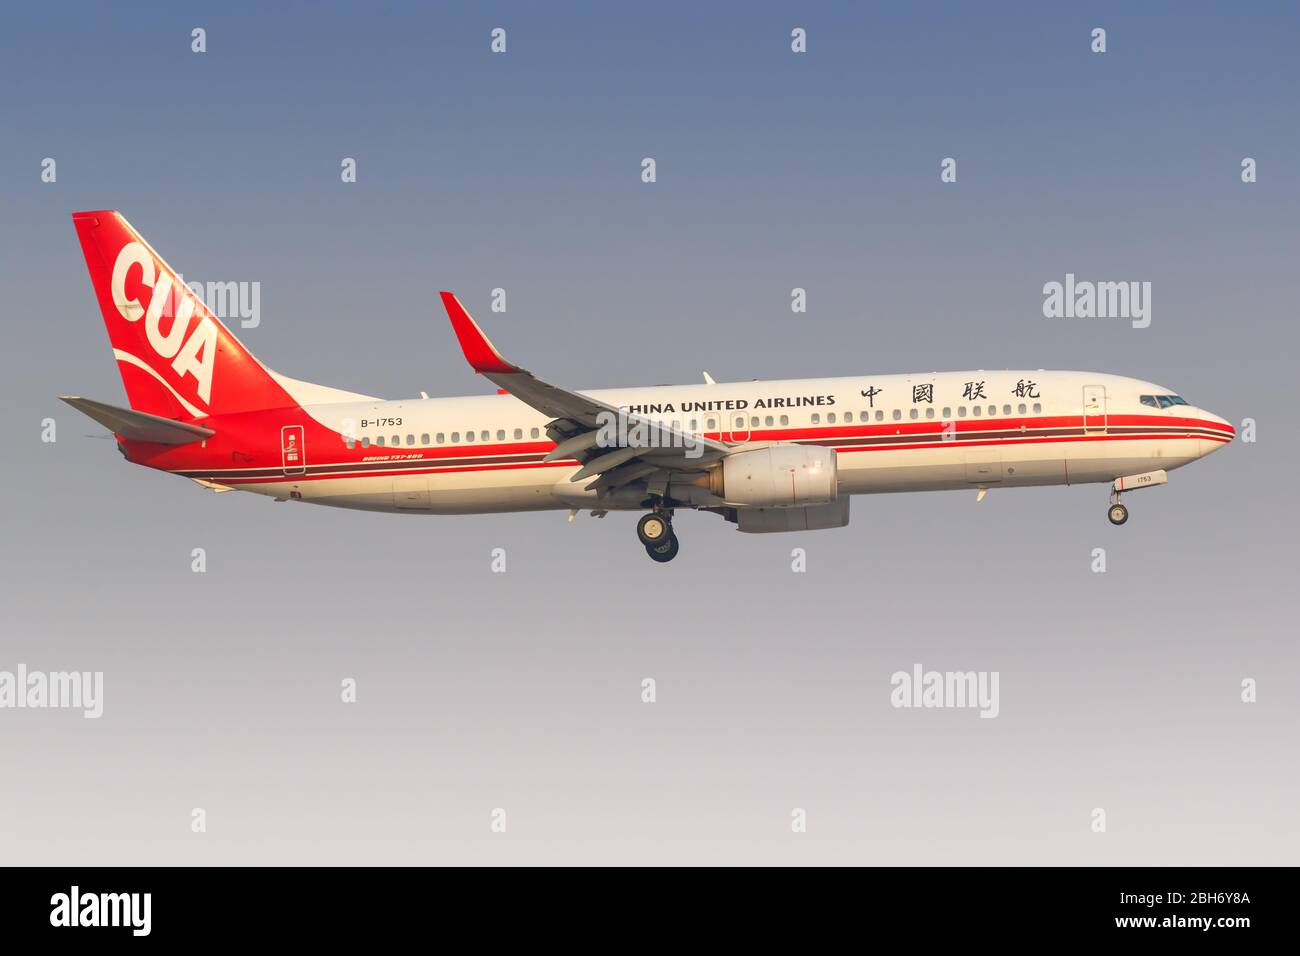 China united airlines fotografías e imágenes de alta resolución - Alamy